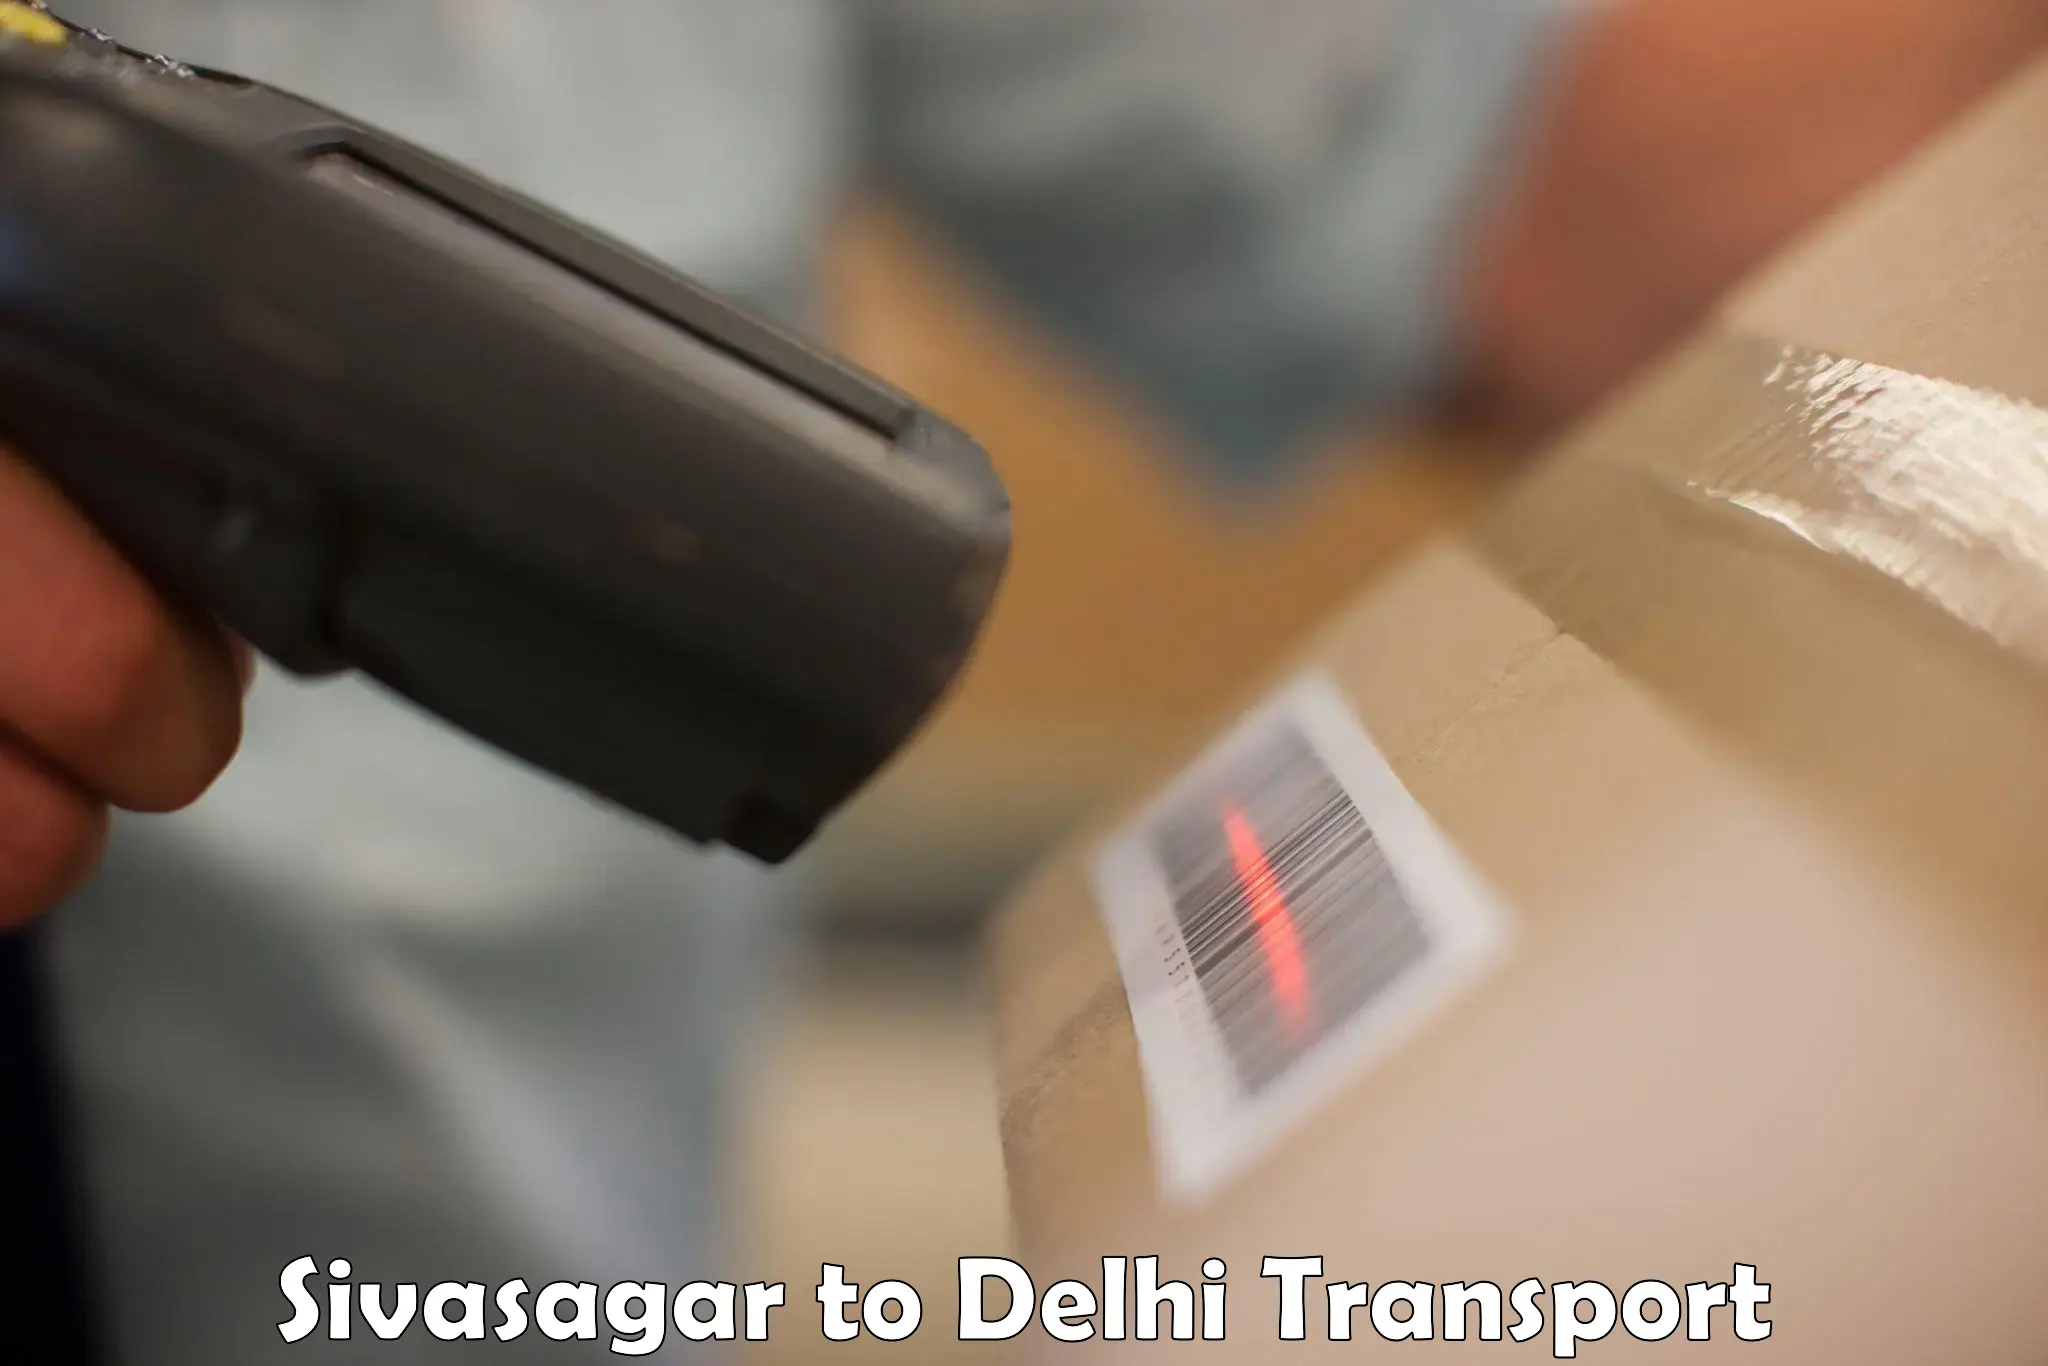 Bike transport service Sivasagar to IIT Delhi